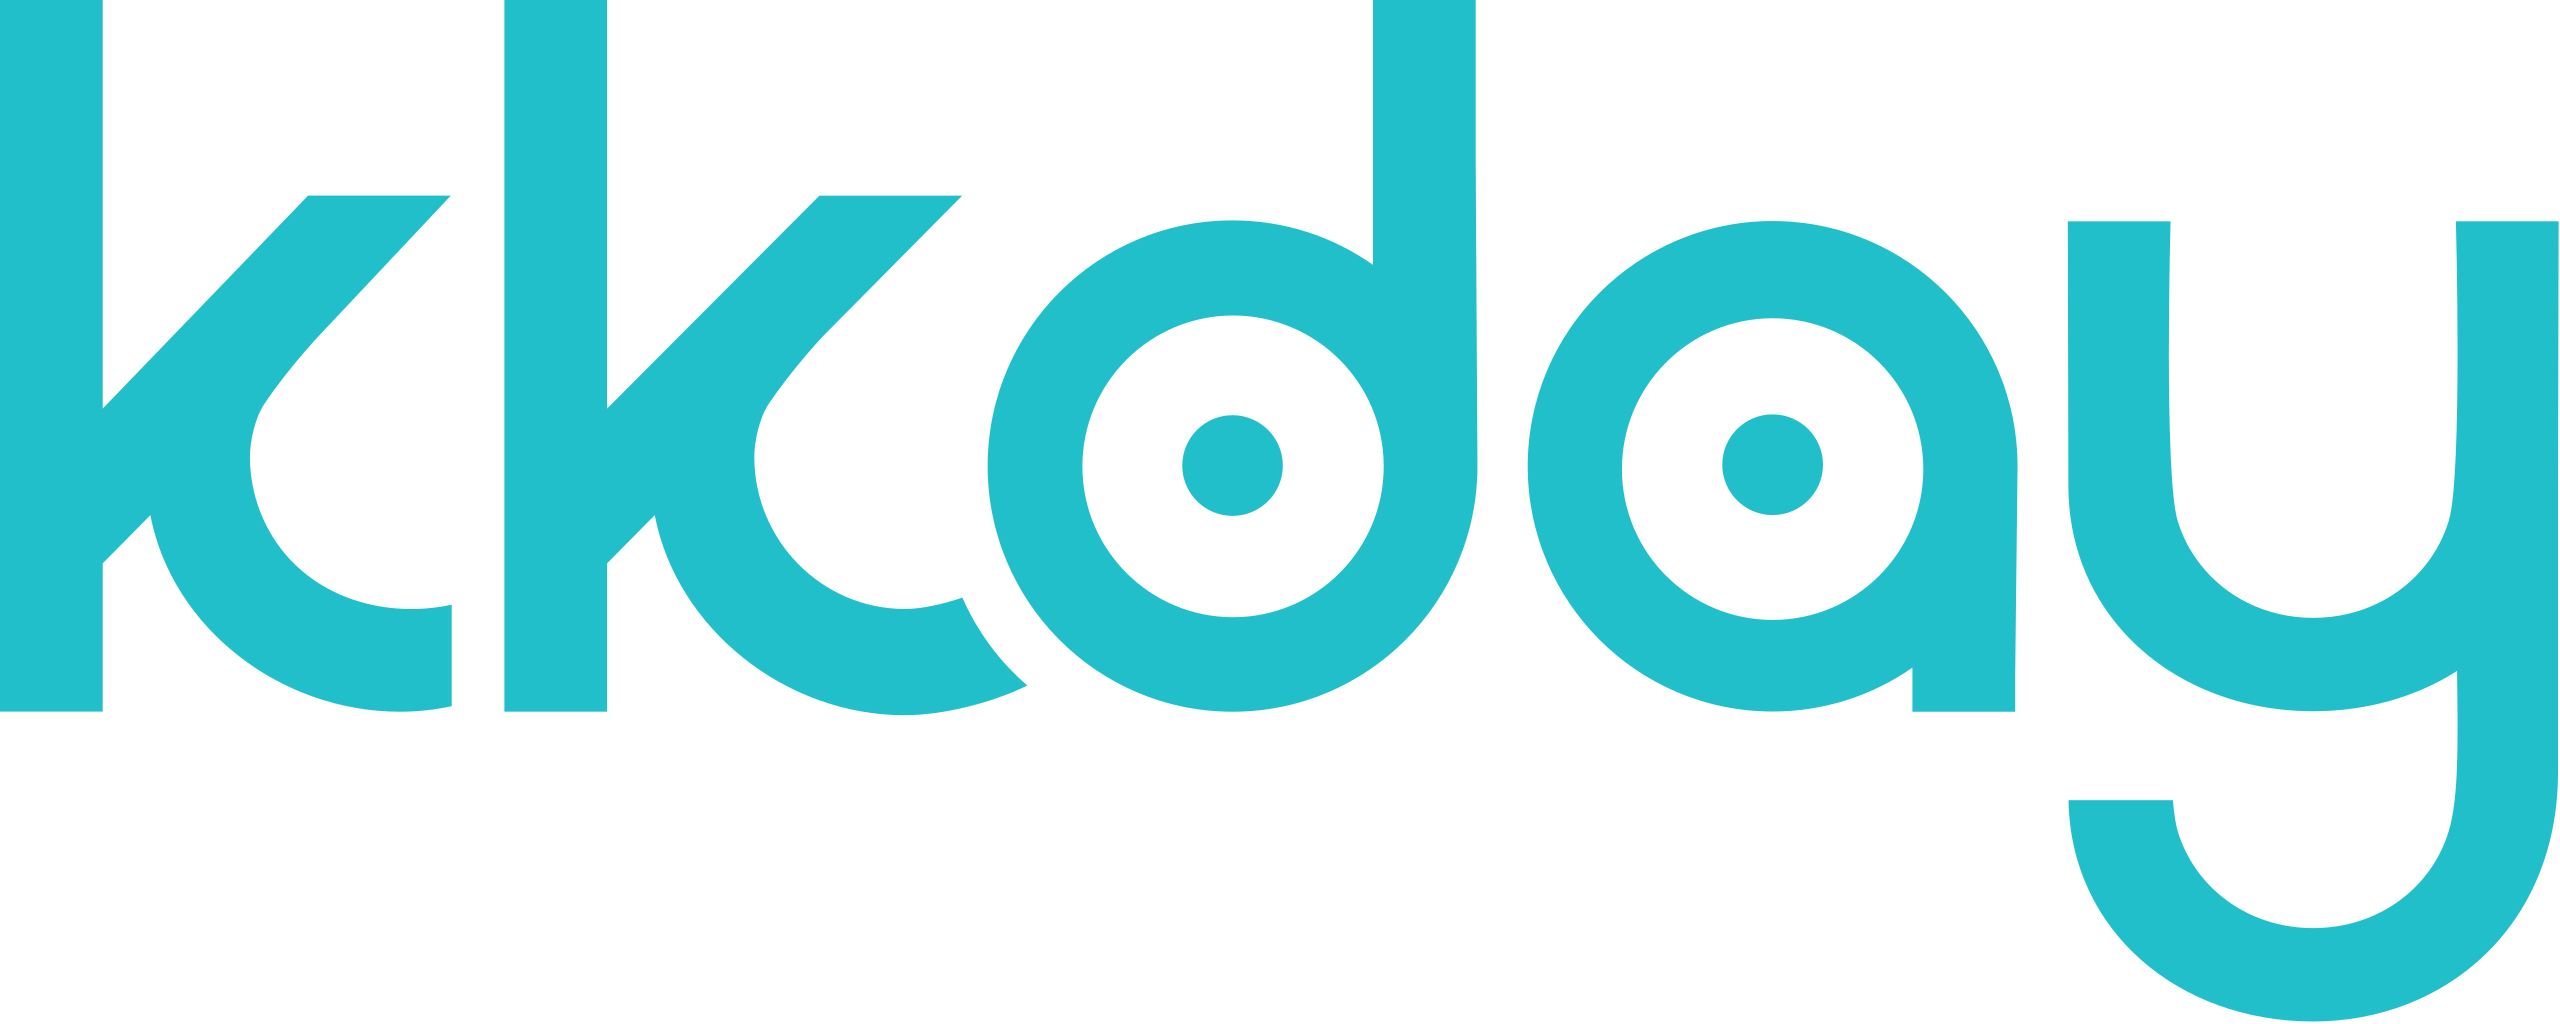 kkdoy logo_合作廠商_禮歐禮贈品